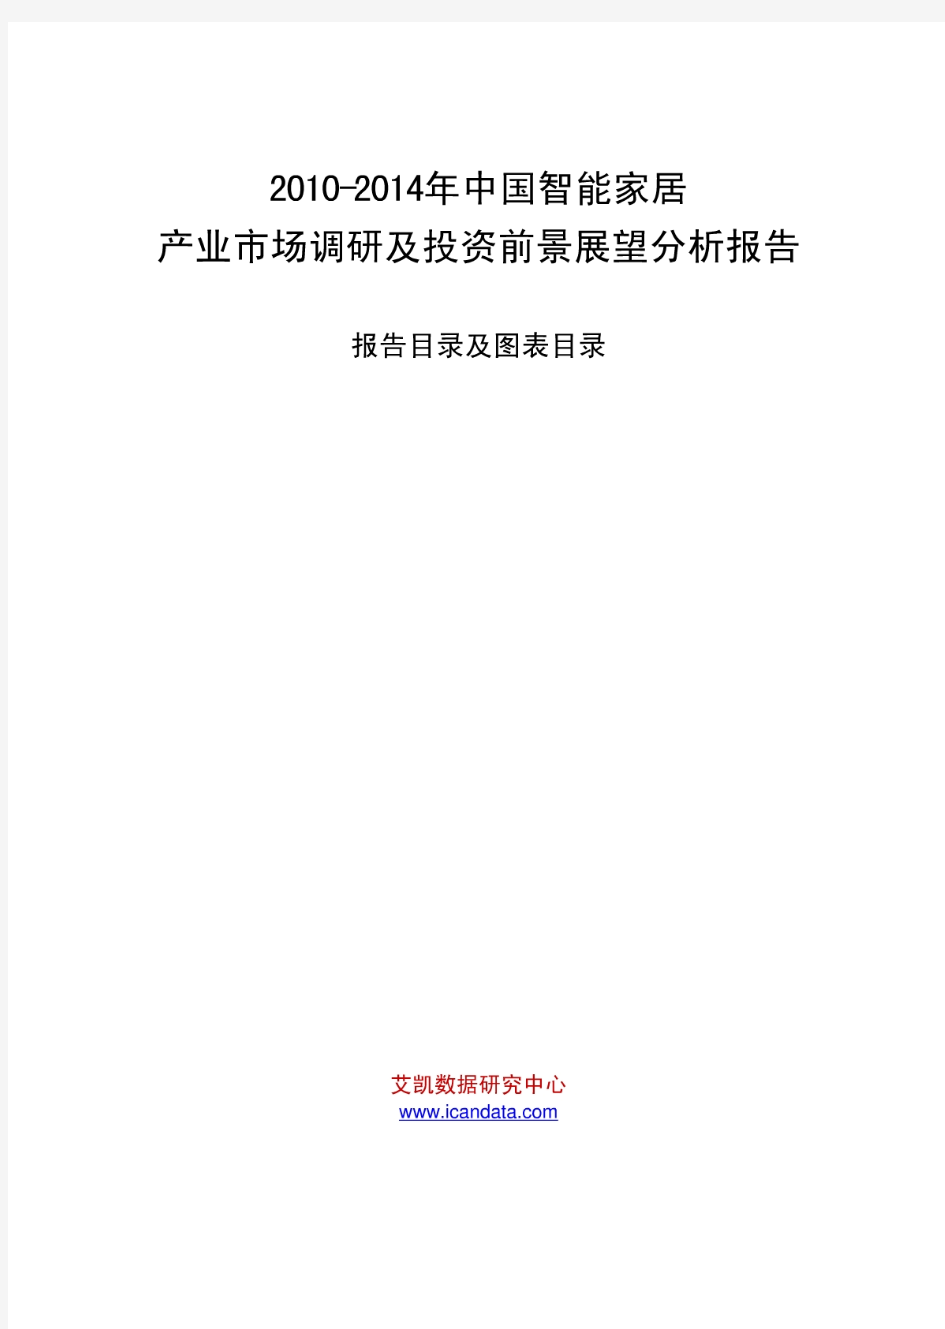 2010-2014年中国智能家居产业市场调研及投资前景展望分析报告